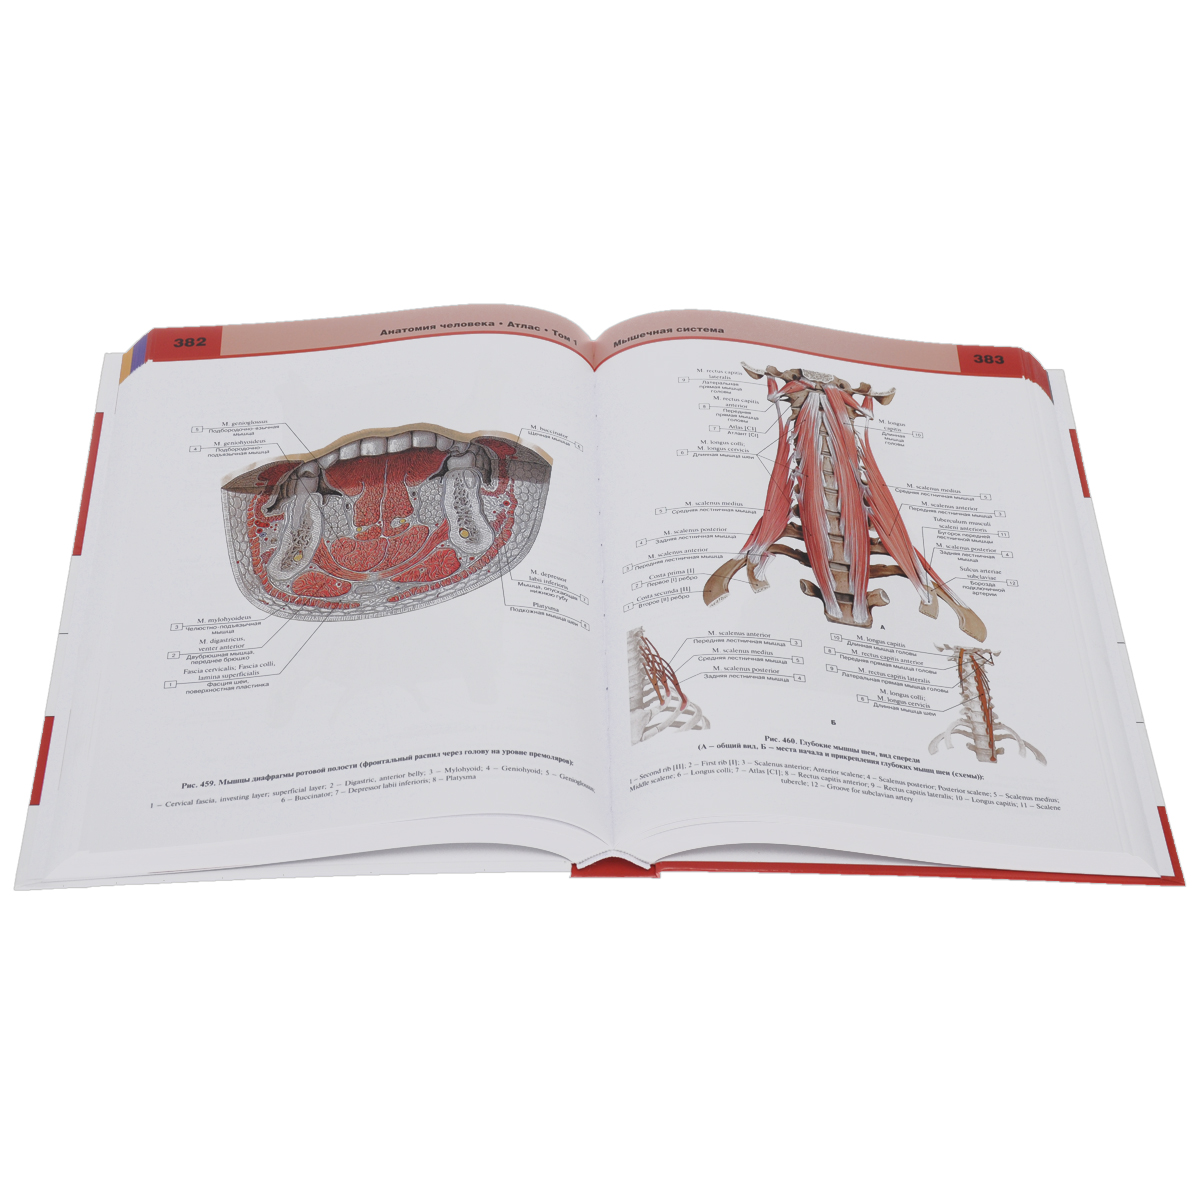 фото Анатомия человека. Атлас. В 3 томах. Том 1. Опорно-двигательный аппарат